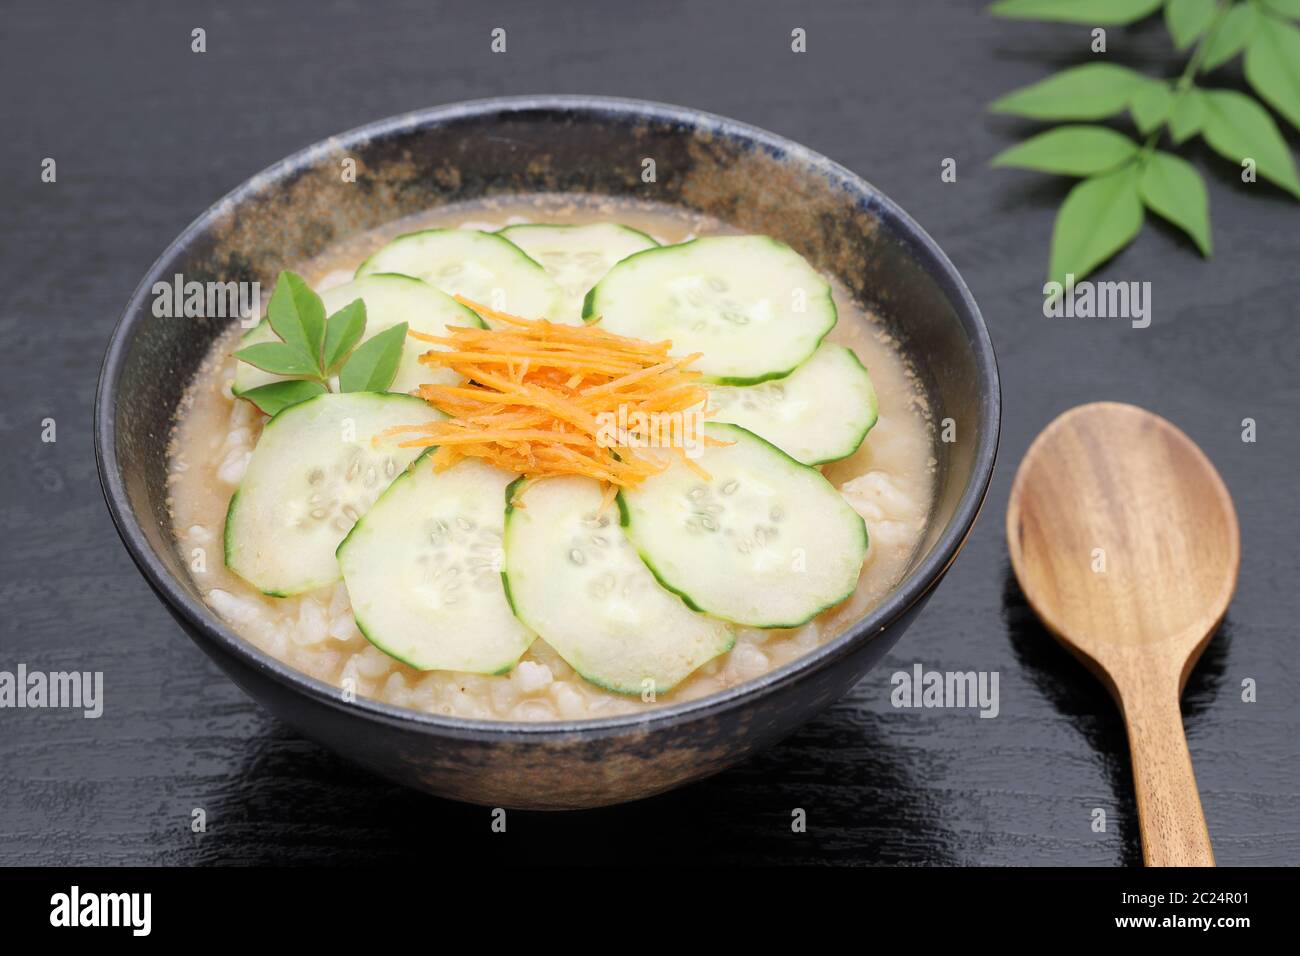 Japanische Essenstablett mit sautierten Rindfleisch mit Salat, Reis und Suppe  Stockfotografie - Alamy